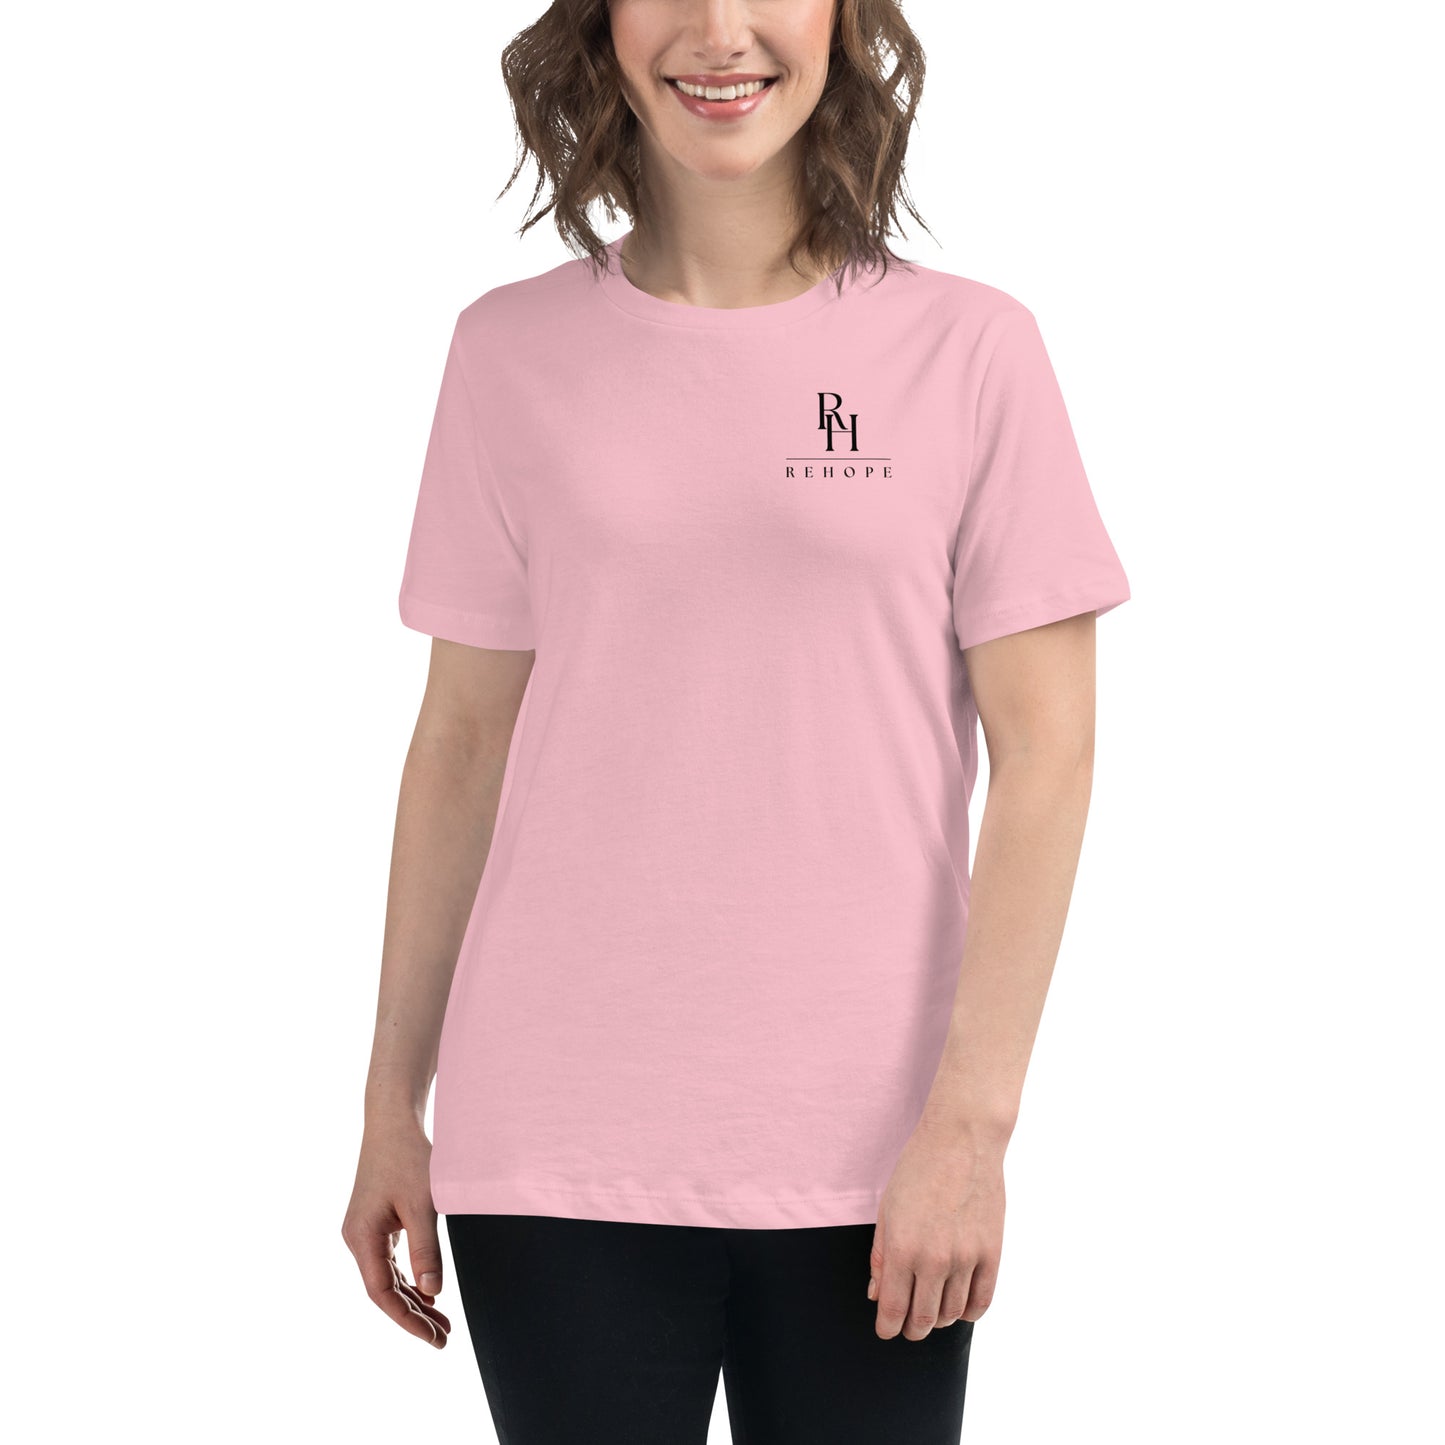 Premium Women's REHOPE T-Shirt